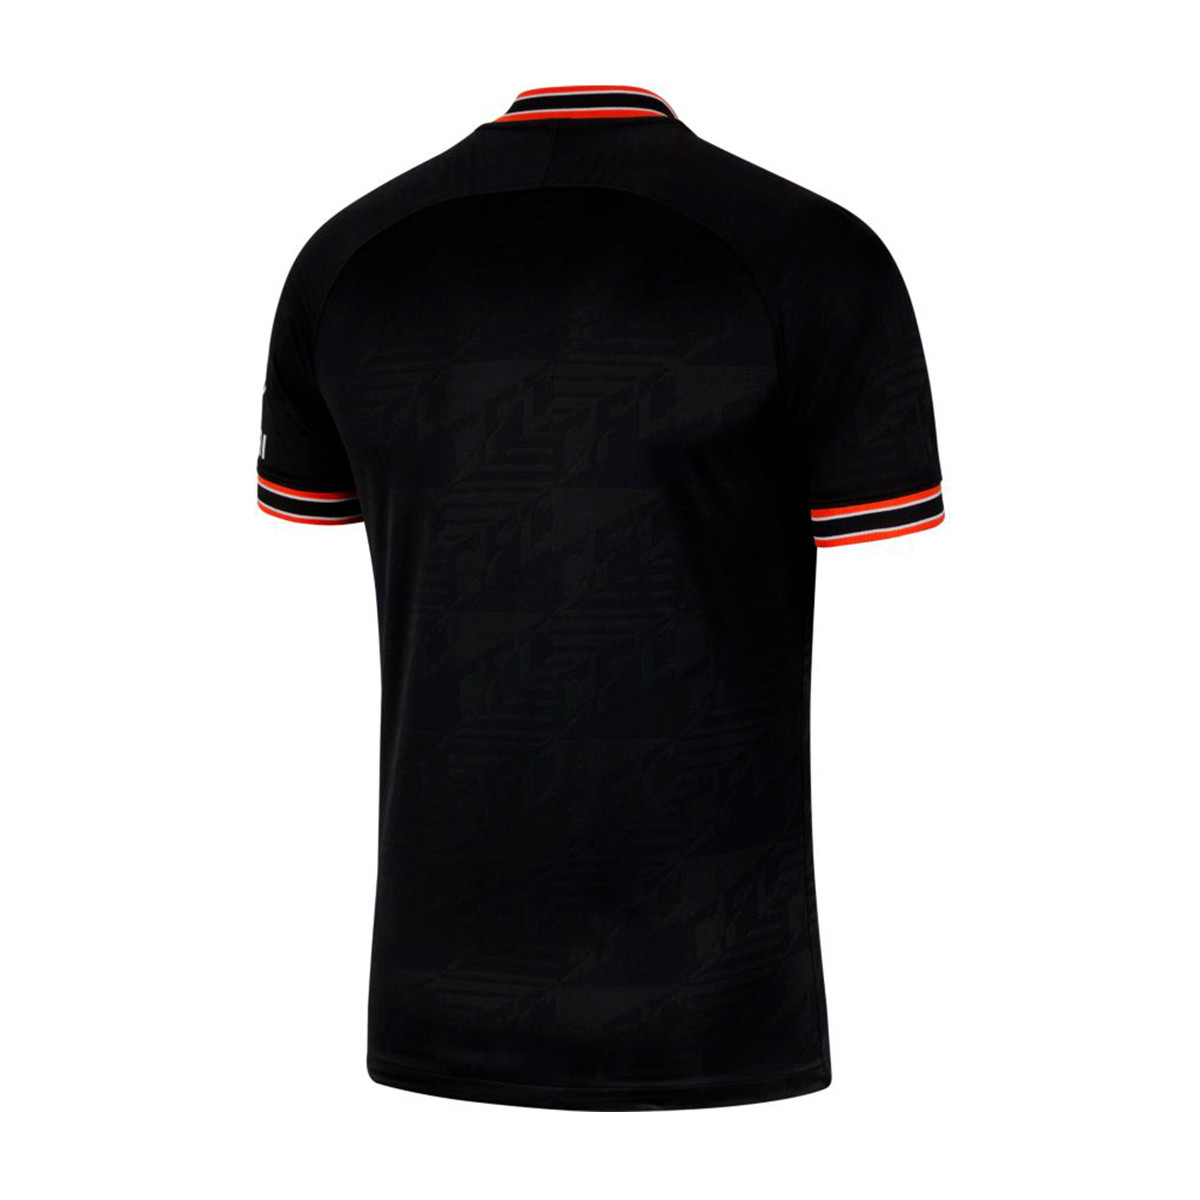 chelsea black jersey 2019